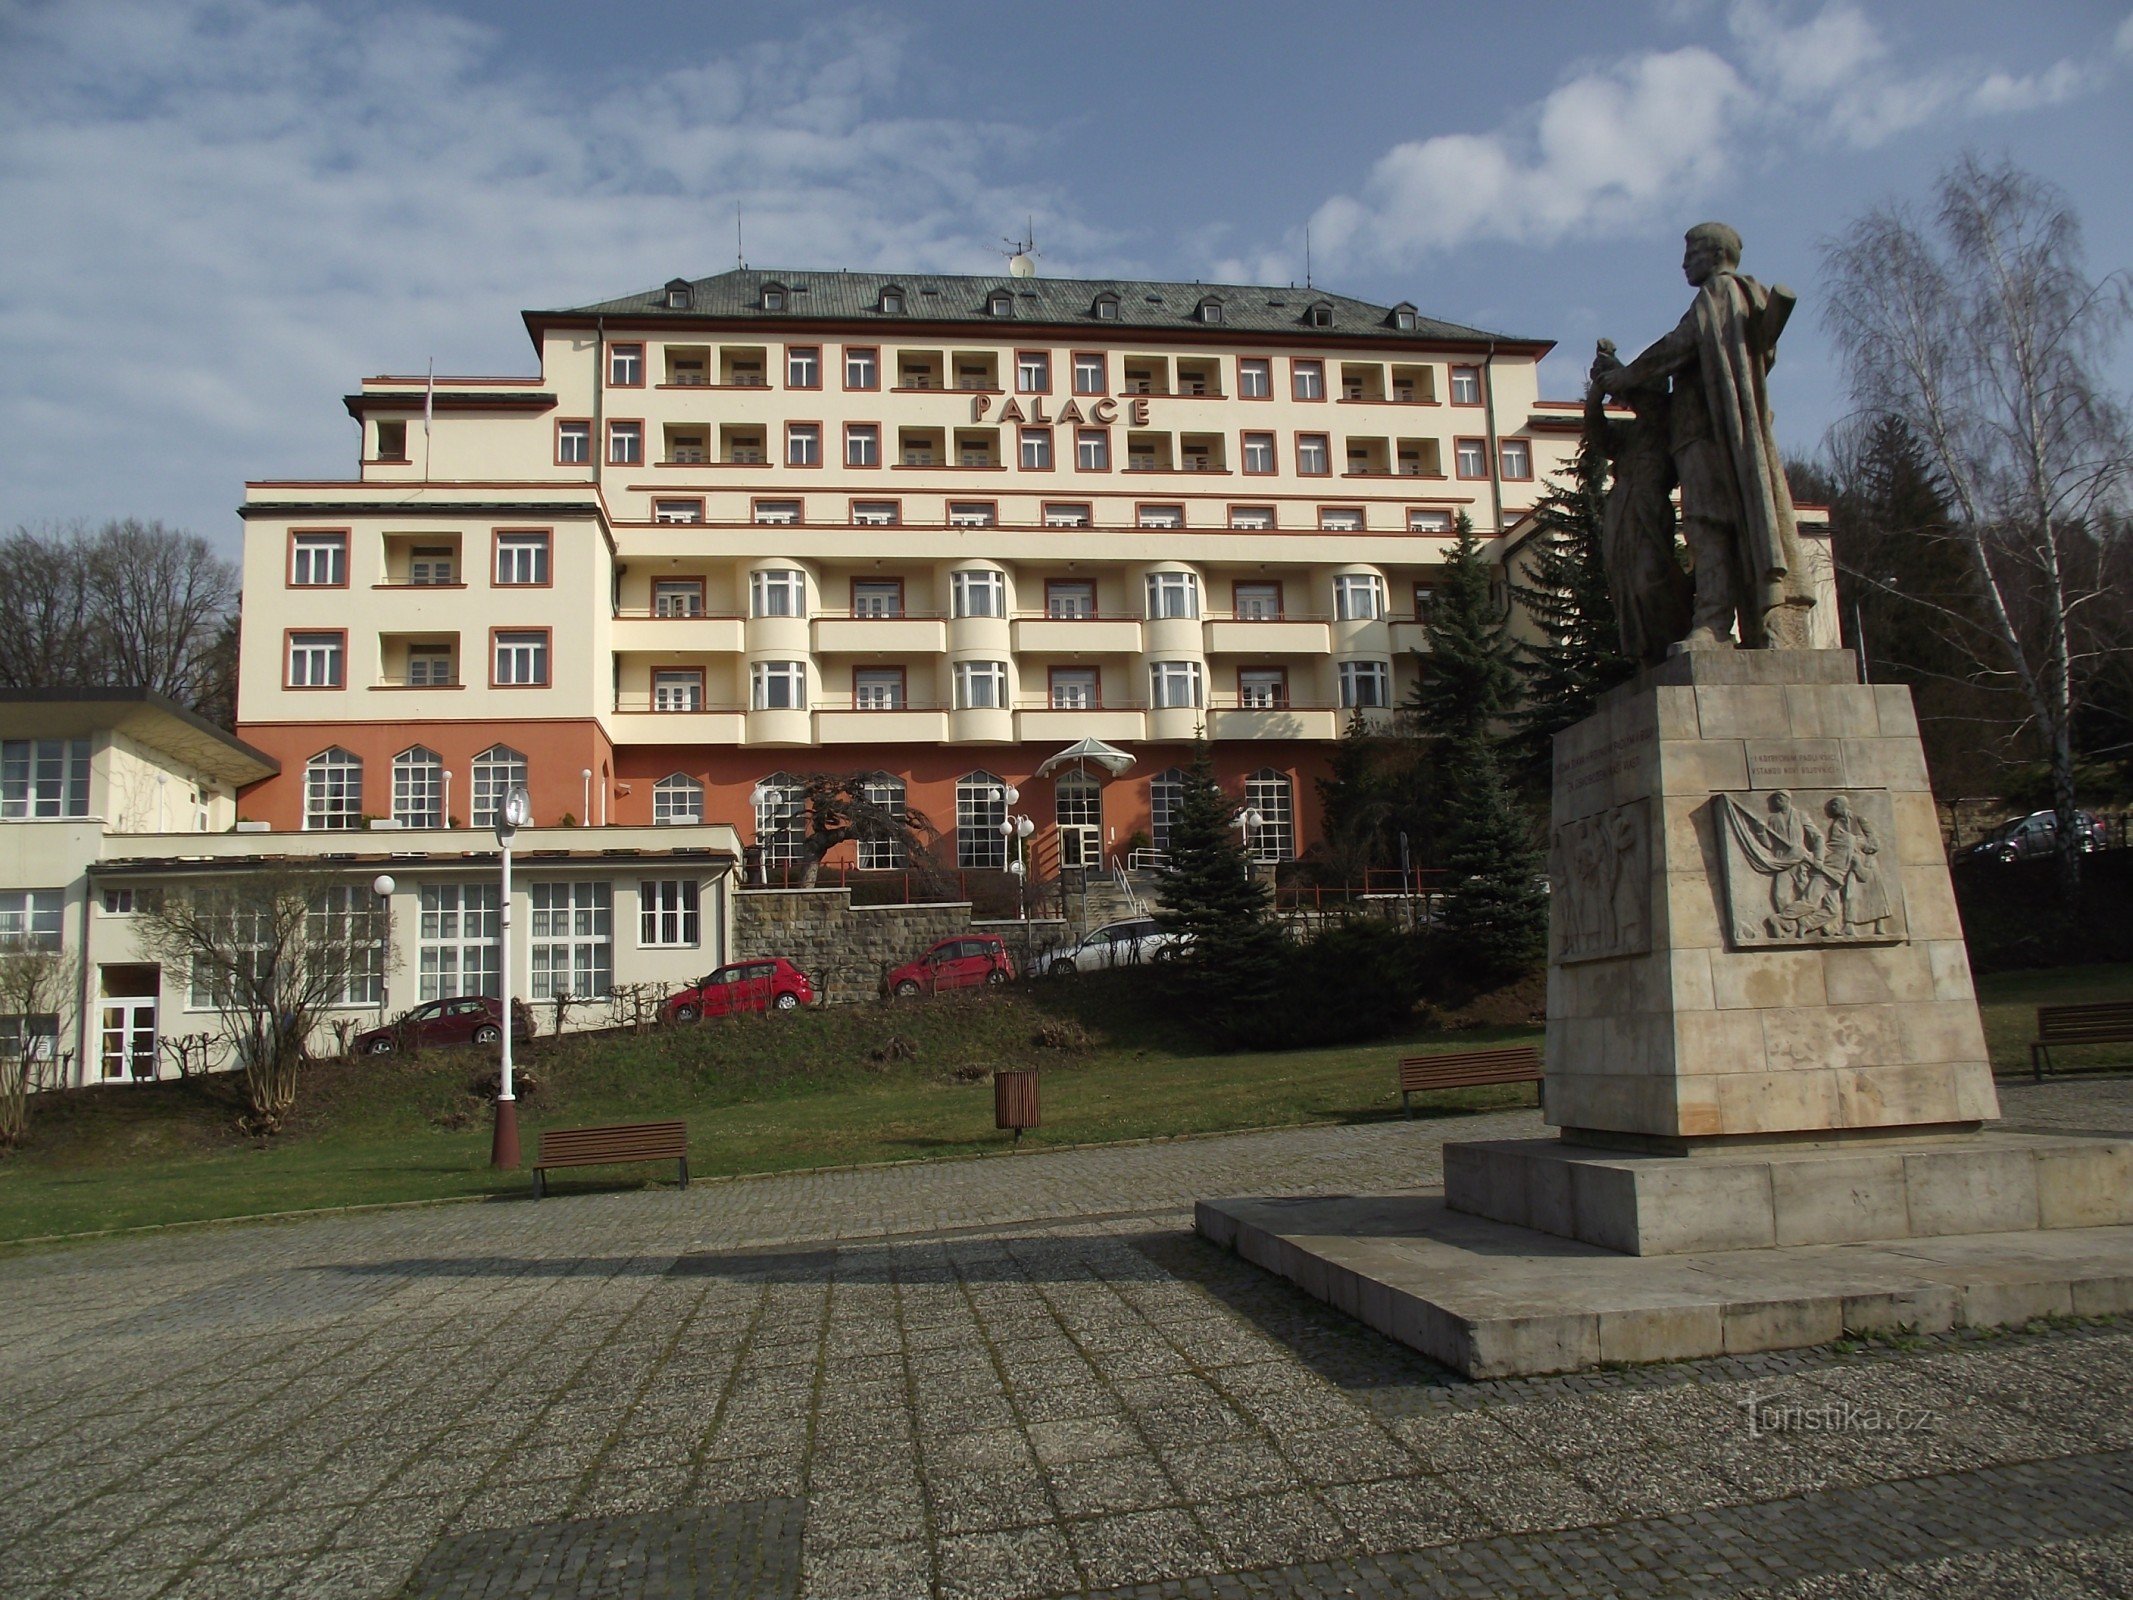 Luhačovice – hotel Palace (Palace Hotel Drtílek)